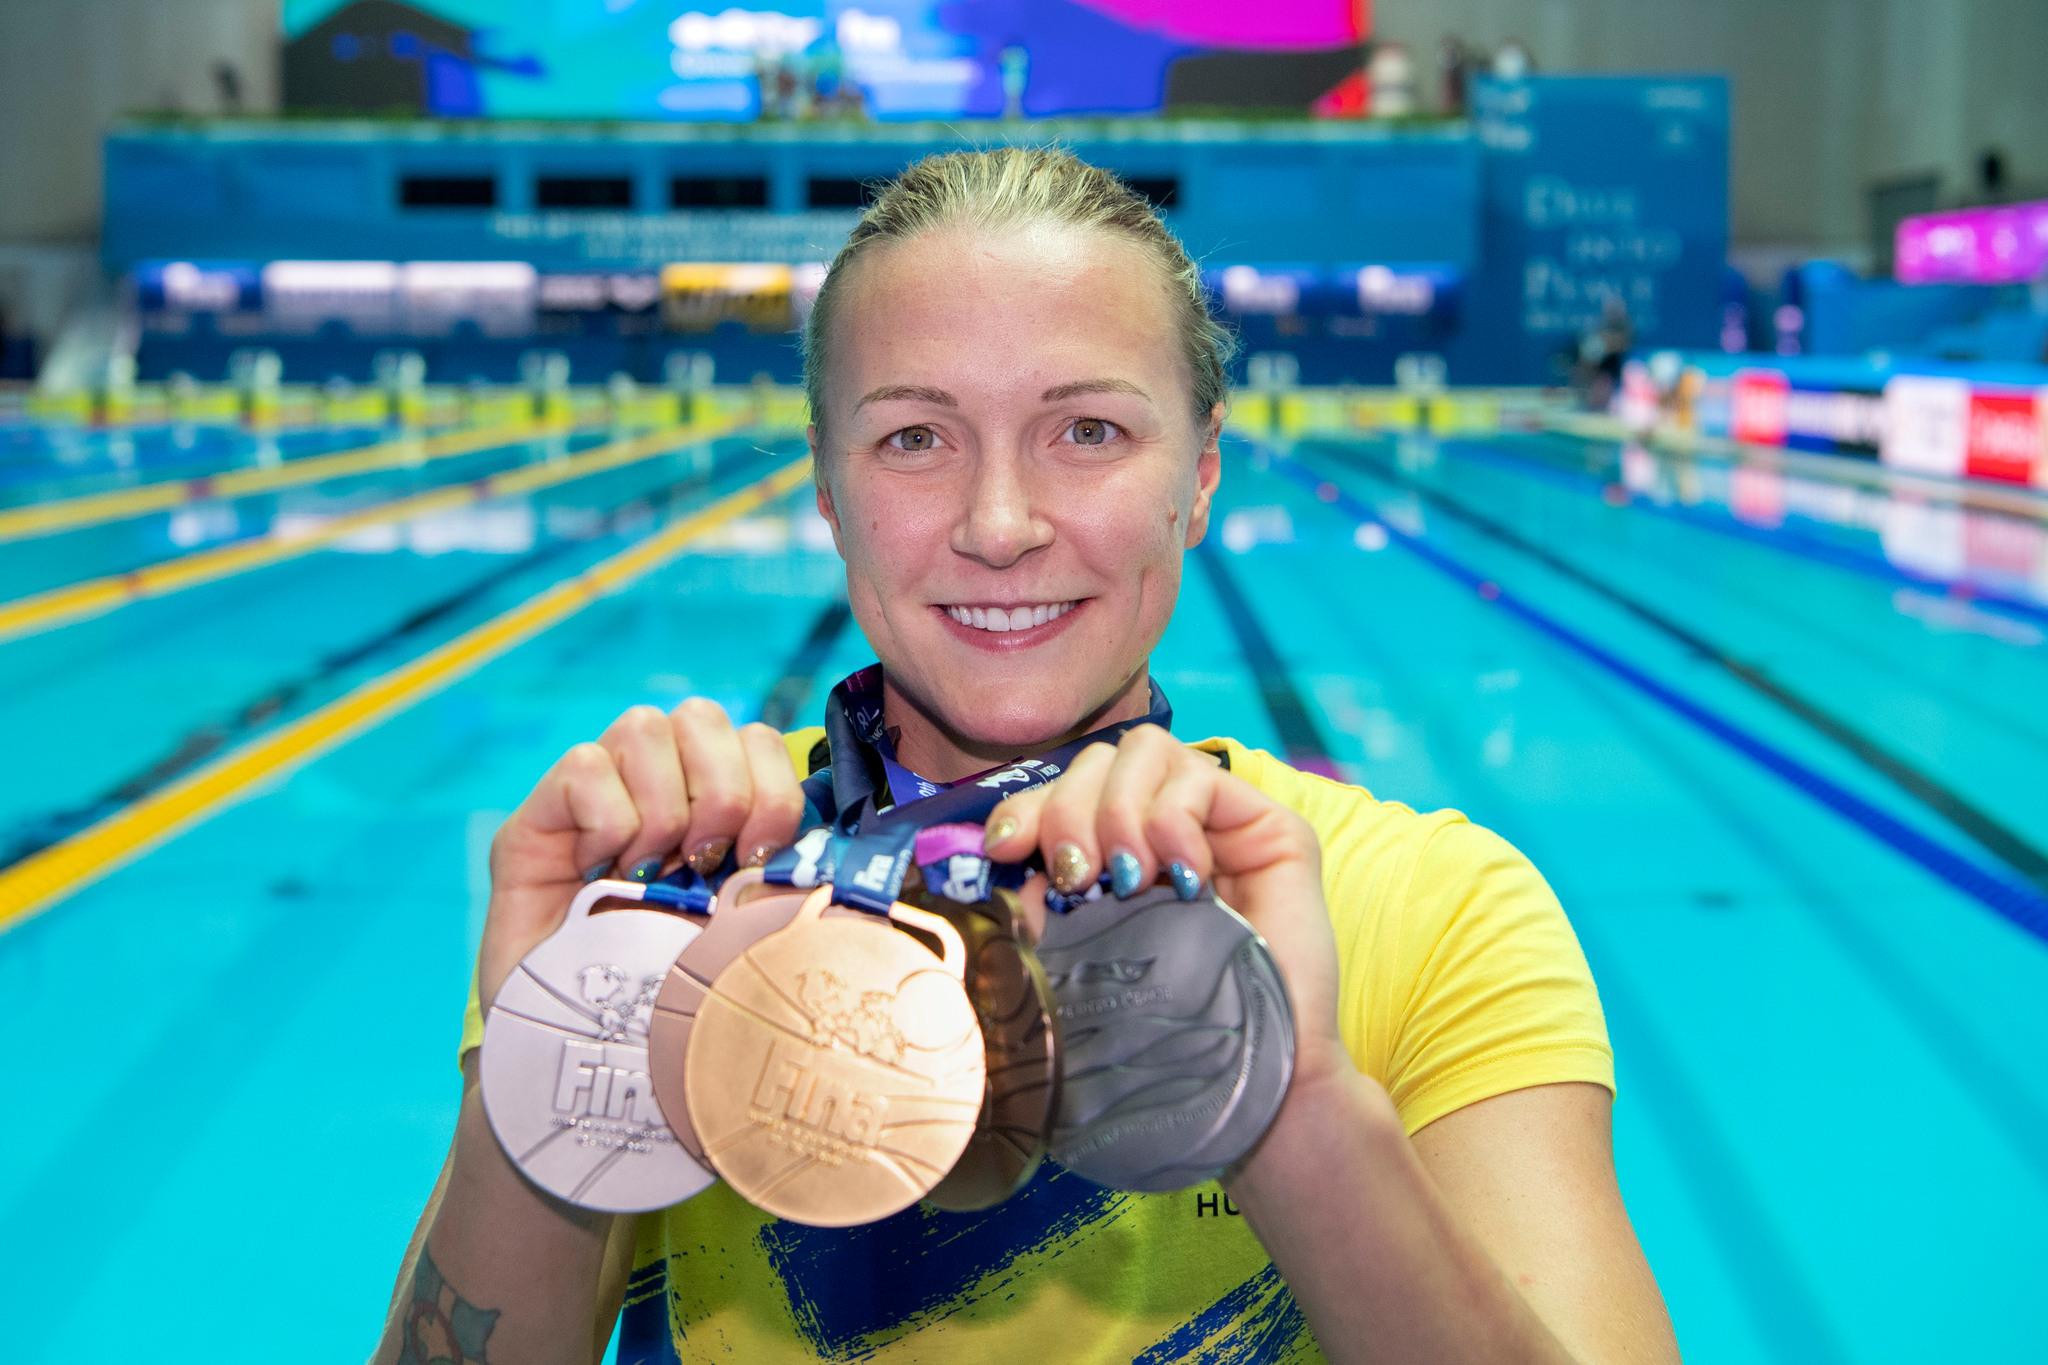 السباحة السويدية سارة خوستروم وهي تحمل السباحة خمس ميداليات فازت بهم في بطولة العالم عام 2019 في غوانغجو، بكوريا الجنوبية.